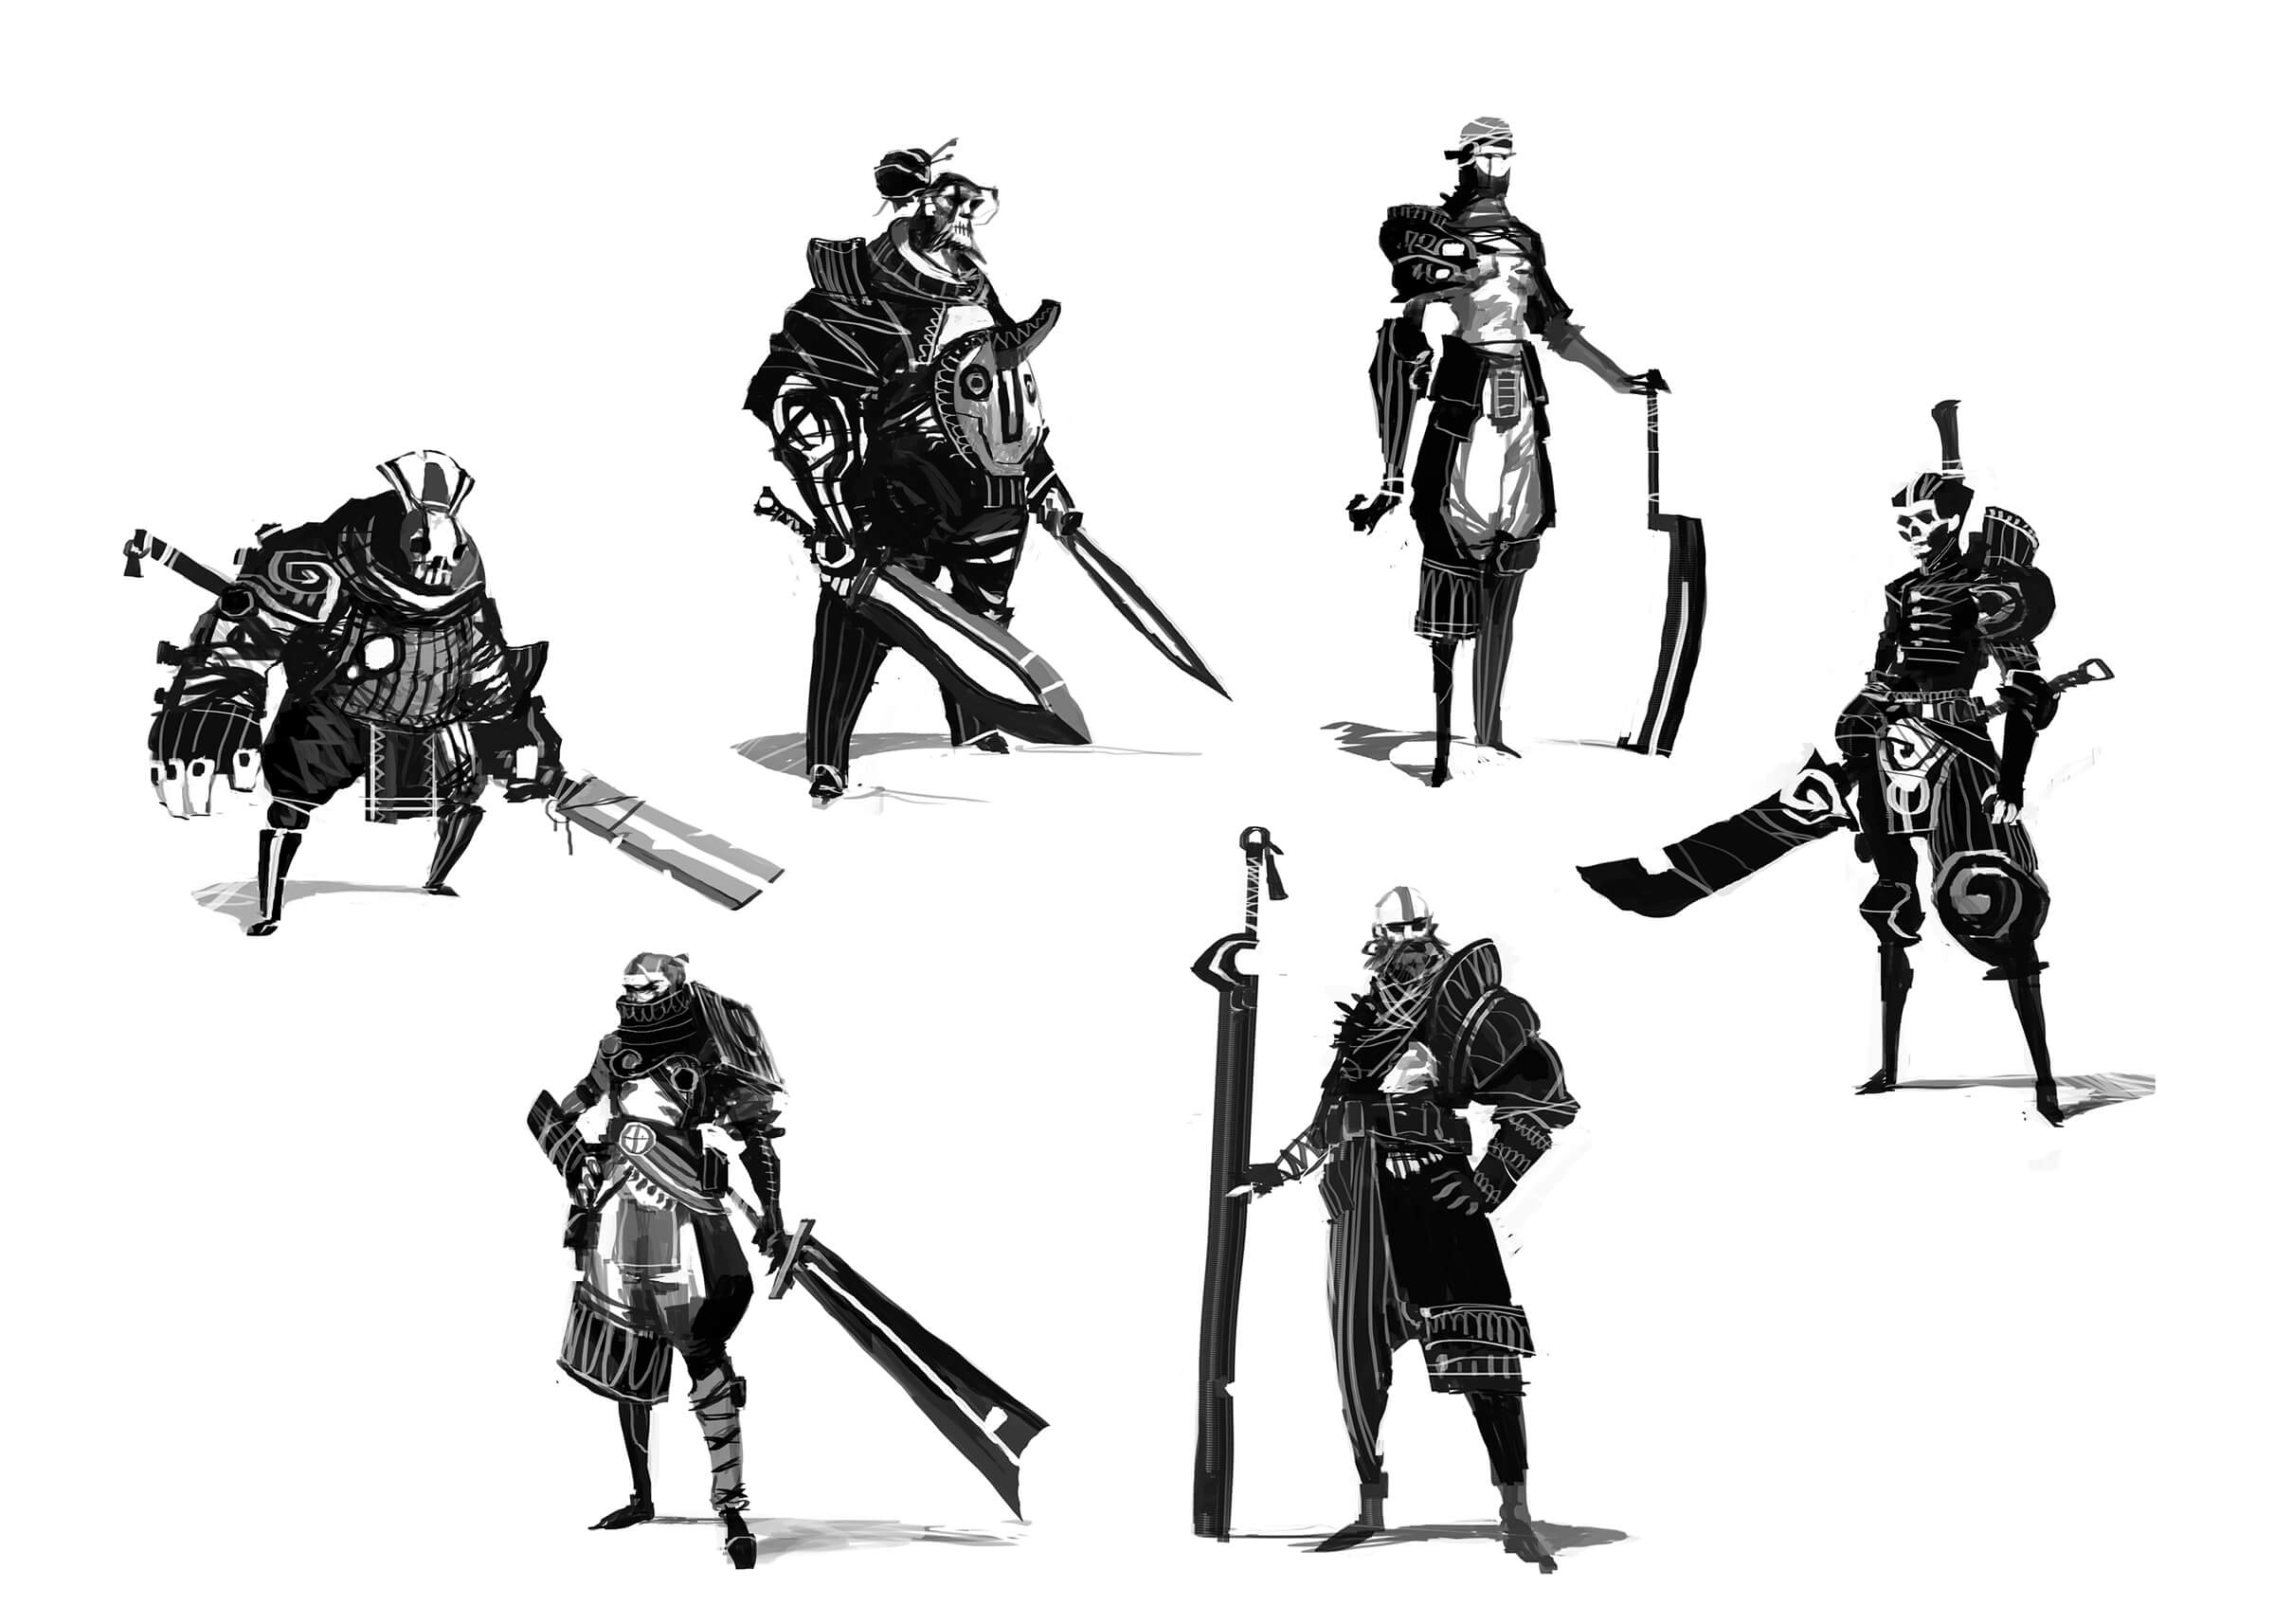 Bocetos en blanco y negro de temibles guerreros posando con sus espadas de gran tamaño, como parte de sus ornamentados equipos de batalla.